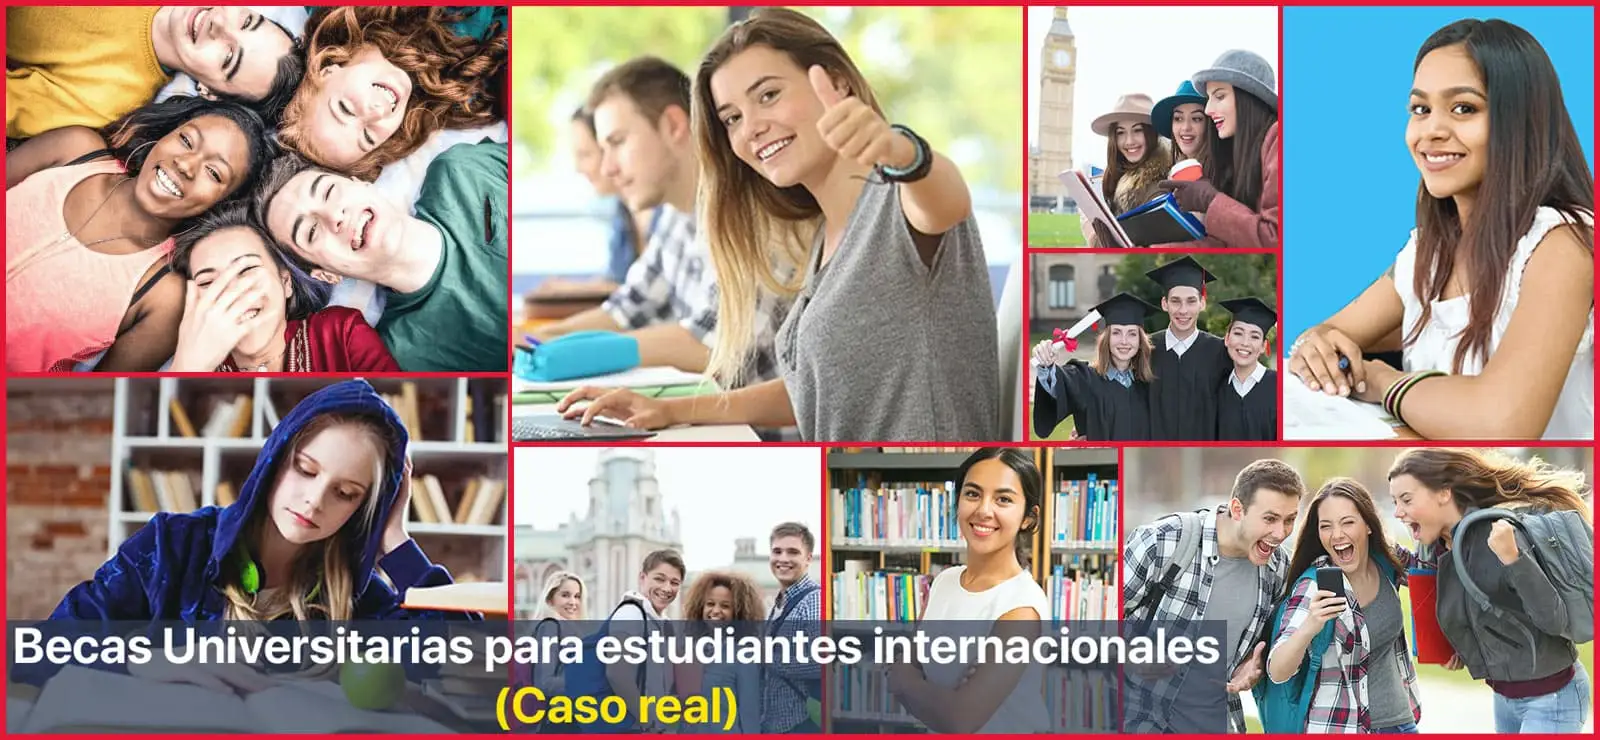 Becas Universitarias para estudiantes internacionales (Caso real) | Sitio Web Oficial Becas.org.es